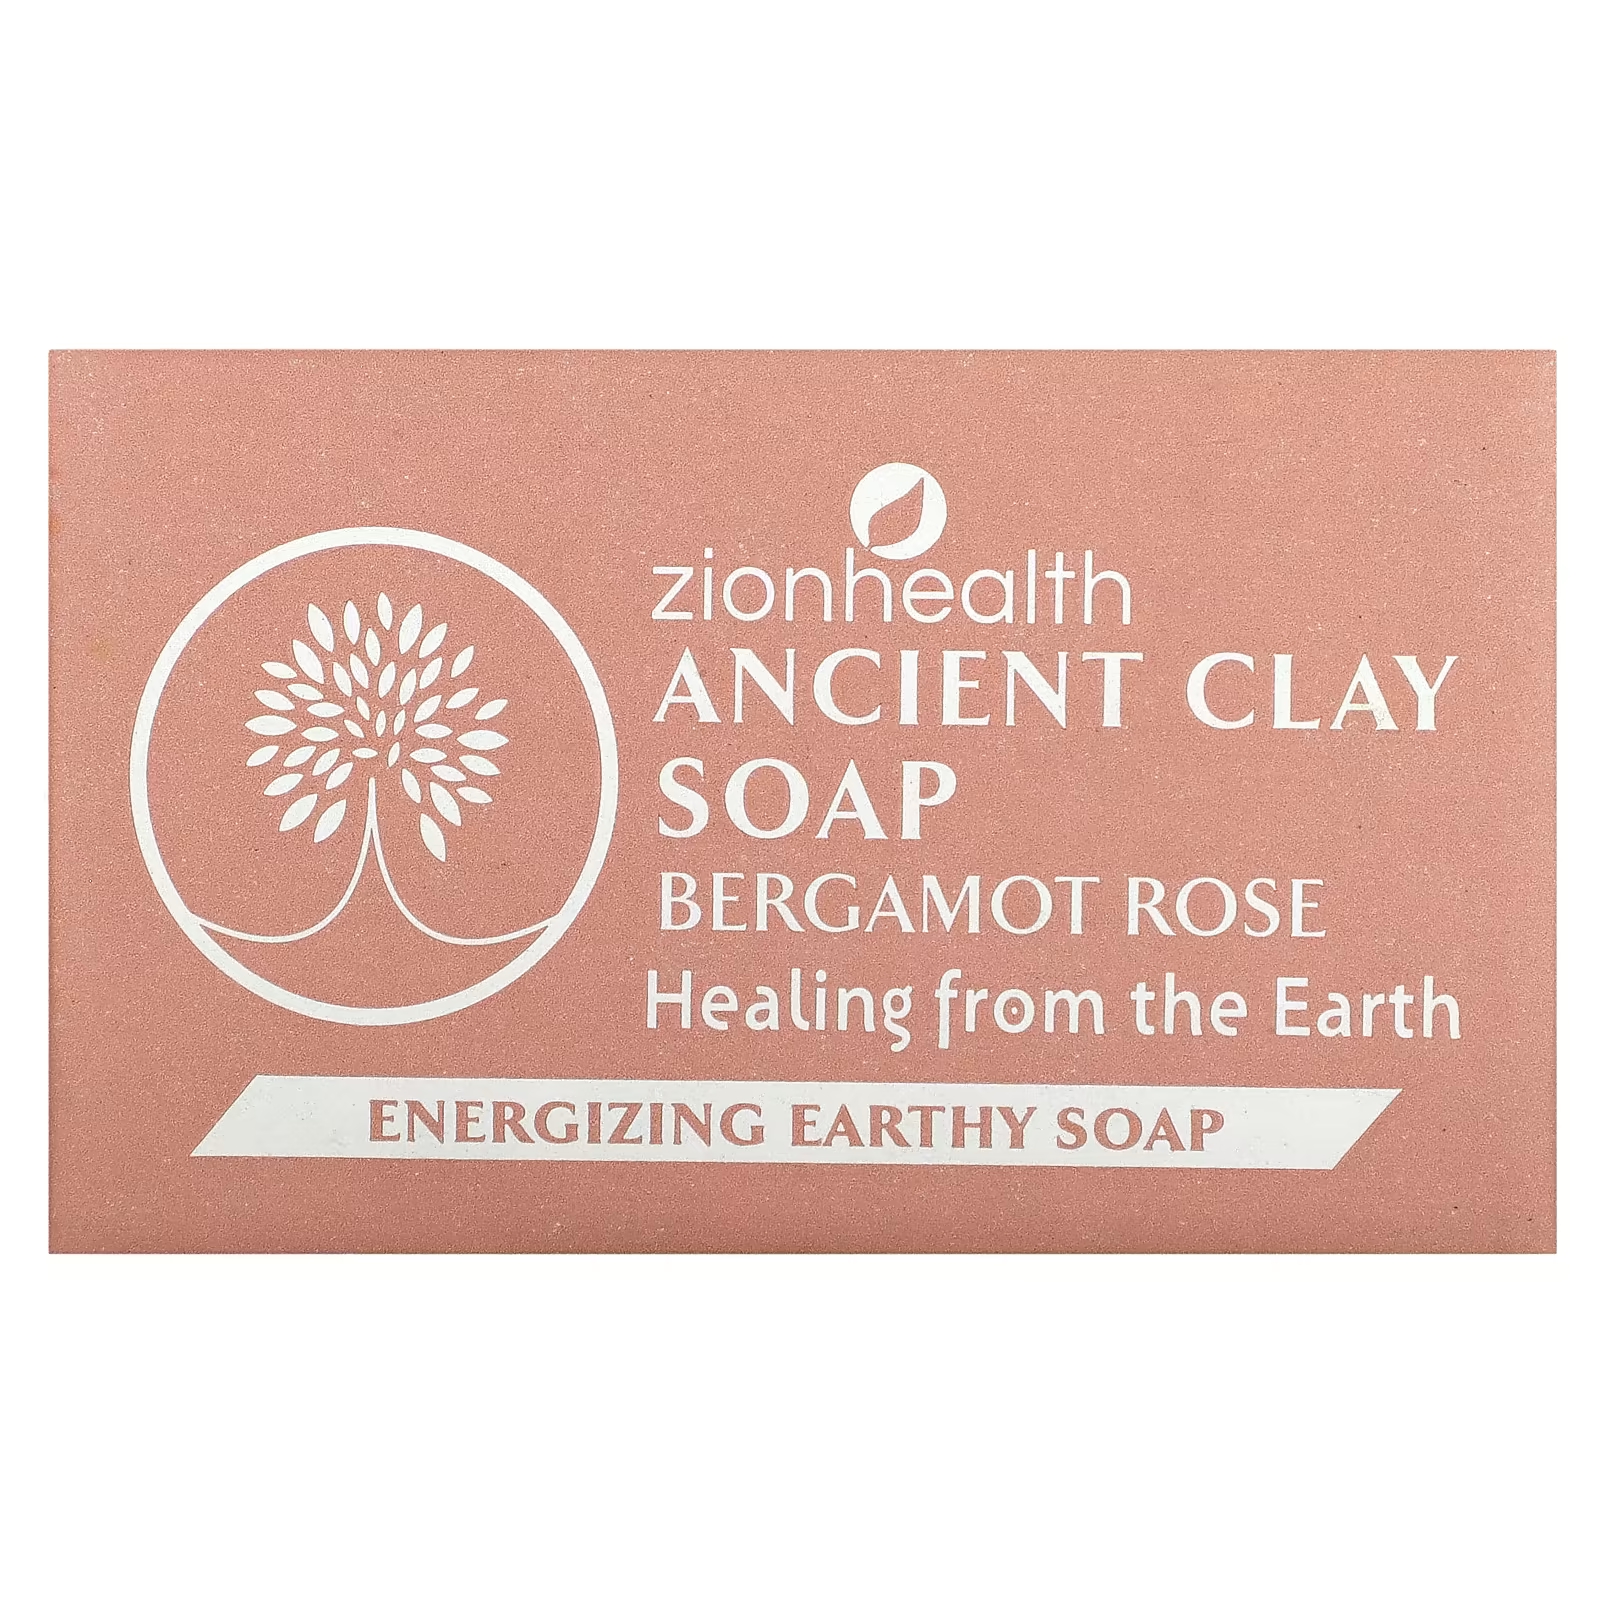 Мыло Zion Health Ancient Clay с бергамотом и розой, 170 г zion health ancient clay soap активированный уголь 170 г 6 унций